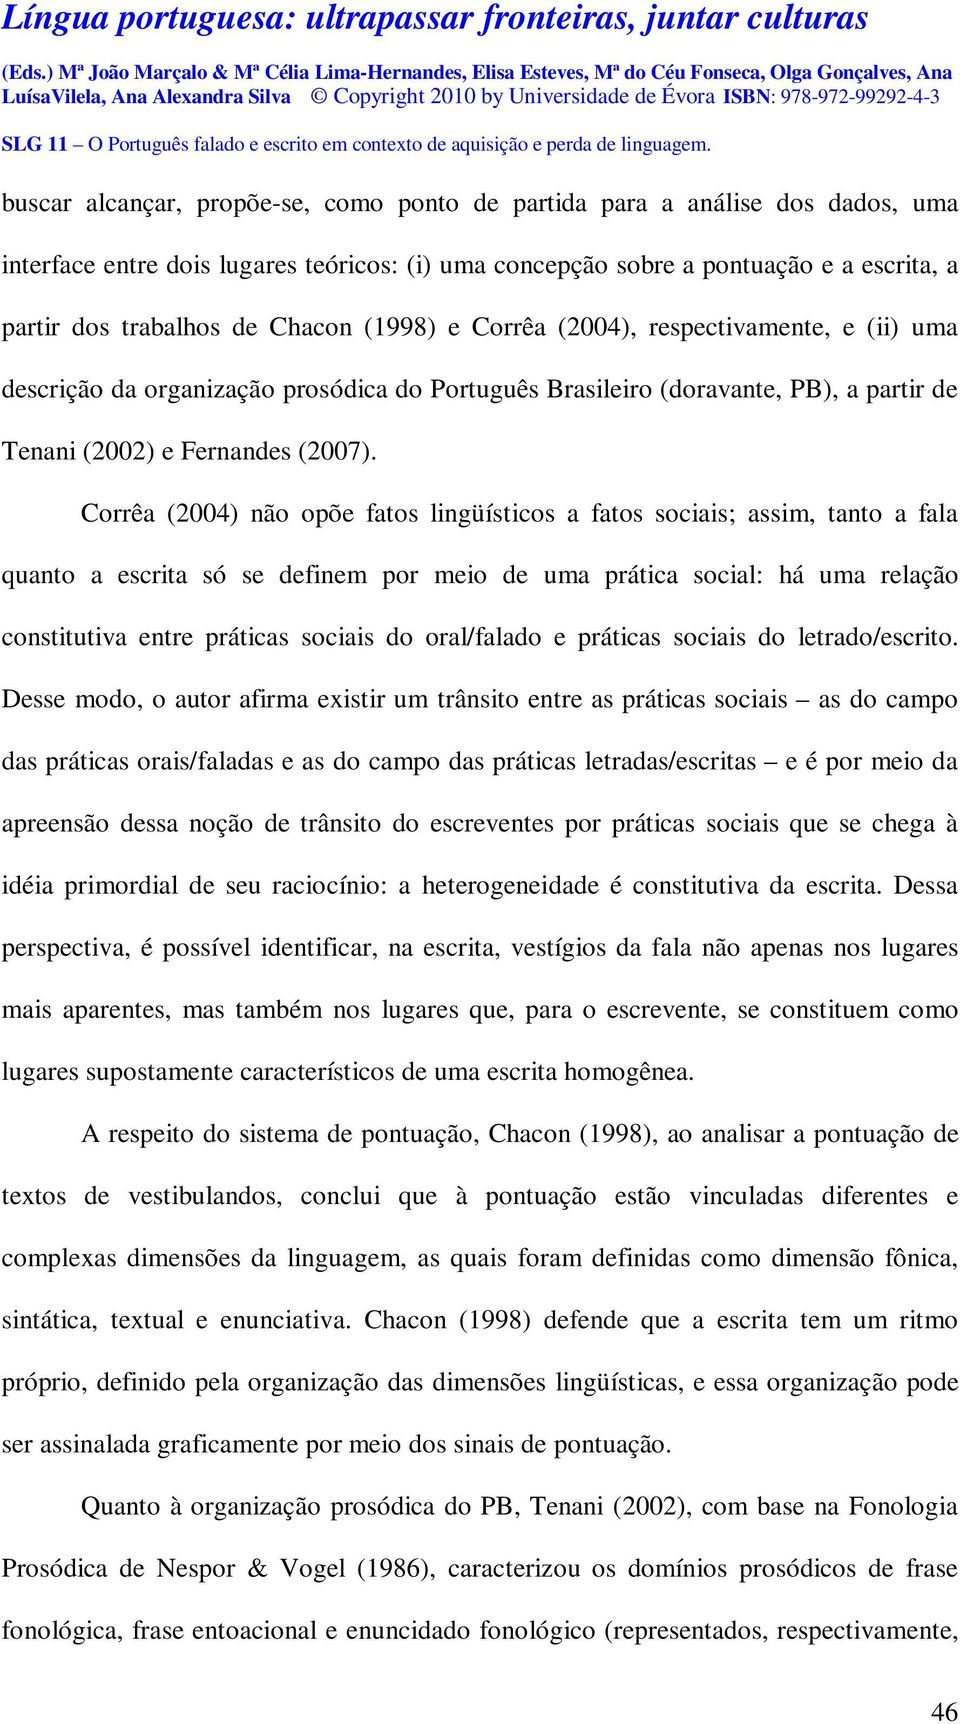 Corrêa (2004) não opõe fatos lingüísticos a fatos sociais; assim, tanto a fala quanto a escrita só se definem por meio de uma prática social: há uma relação constitutiva entre práticas sociais do